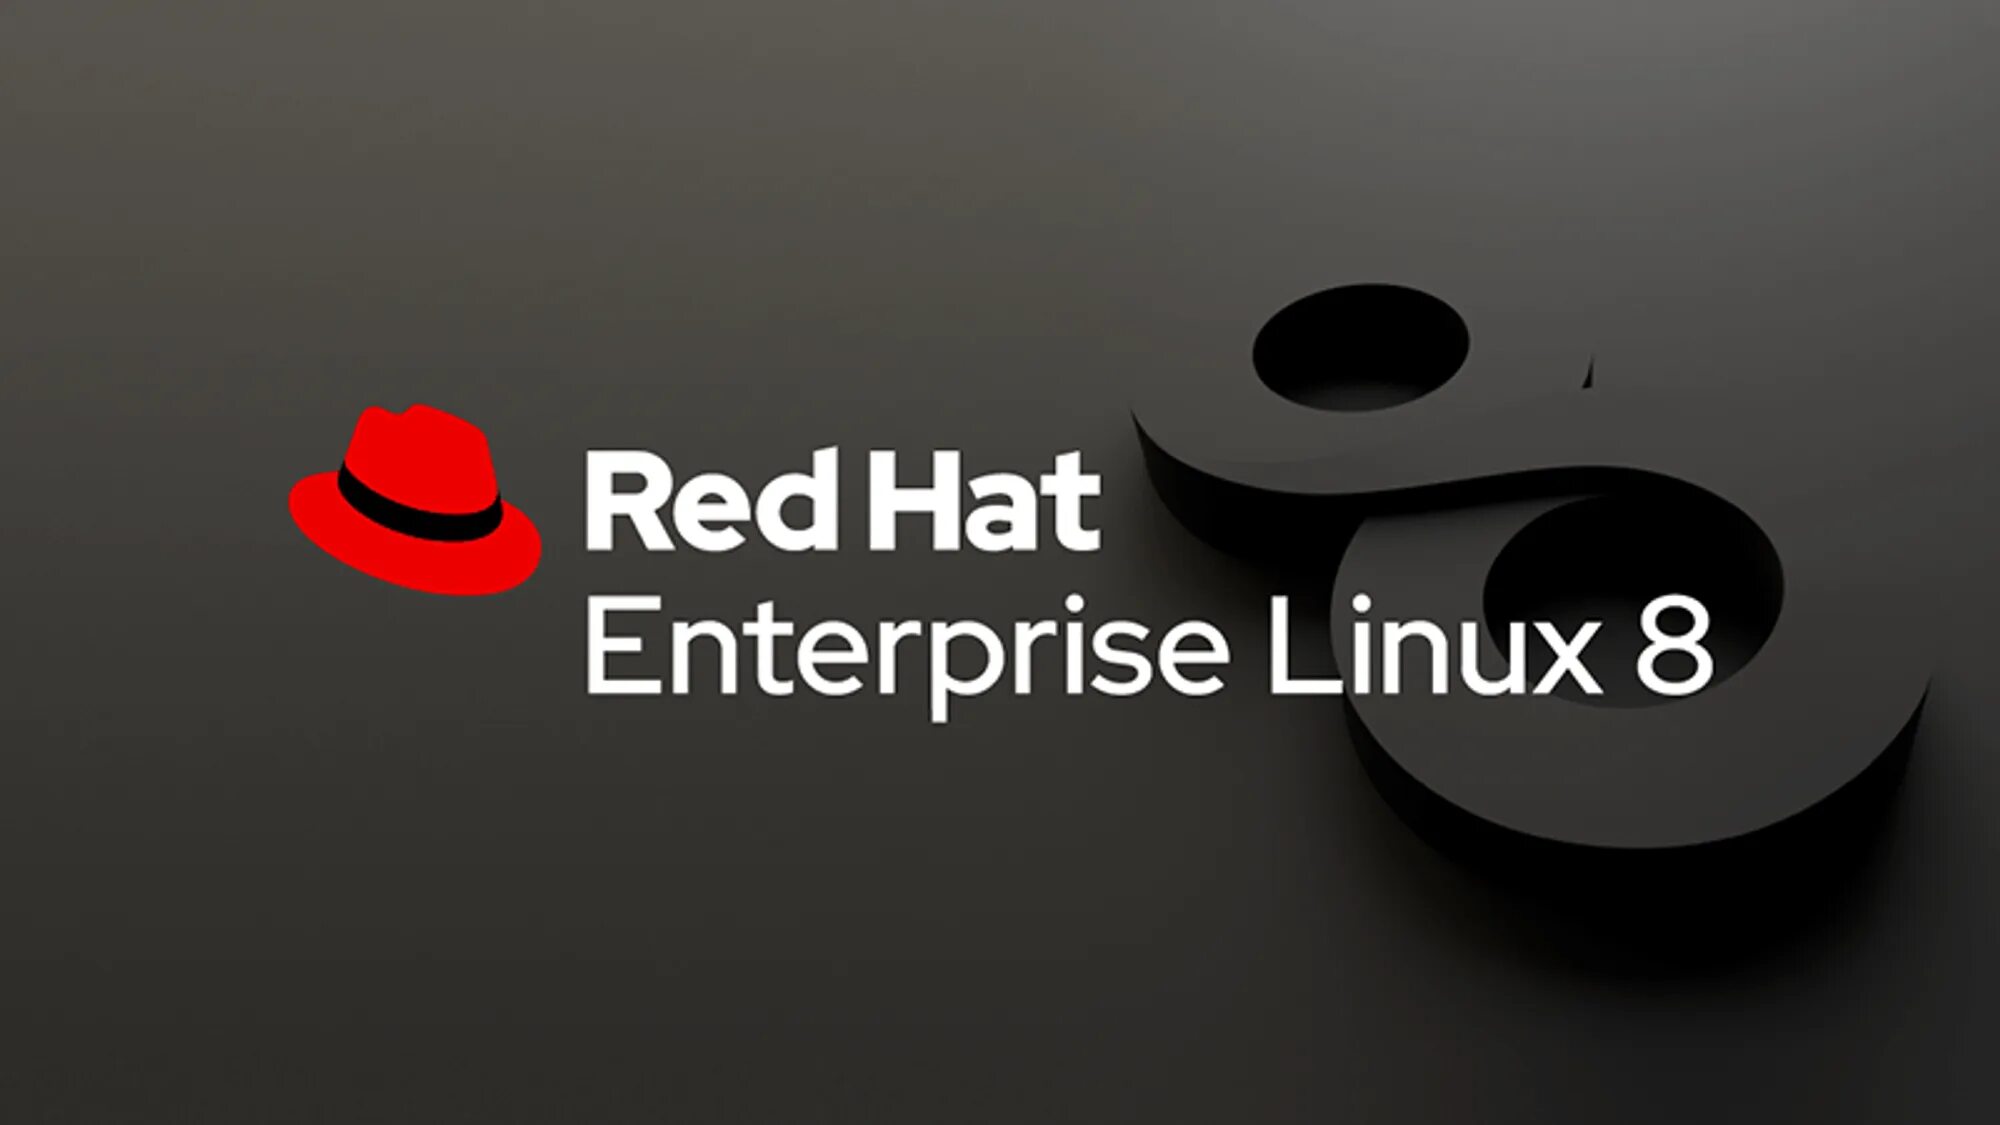 Red hat Enterprise Linux. RHEL 8. Red hat Enterprise Linux 8. RHEL Linux. Red hat 8